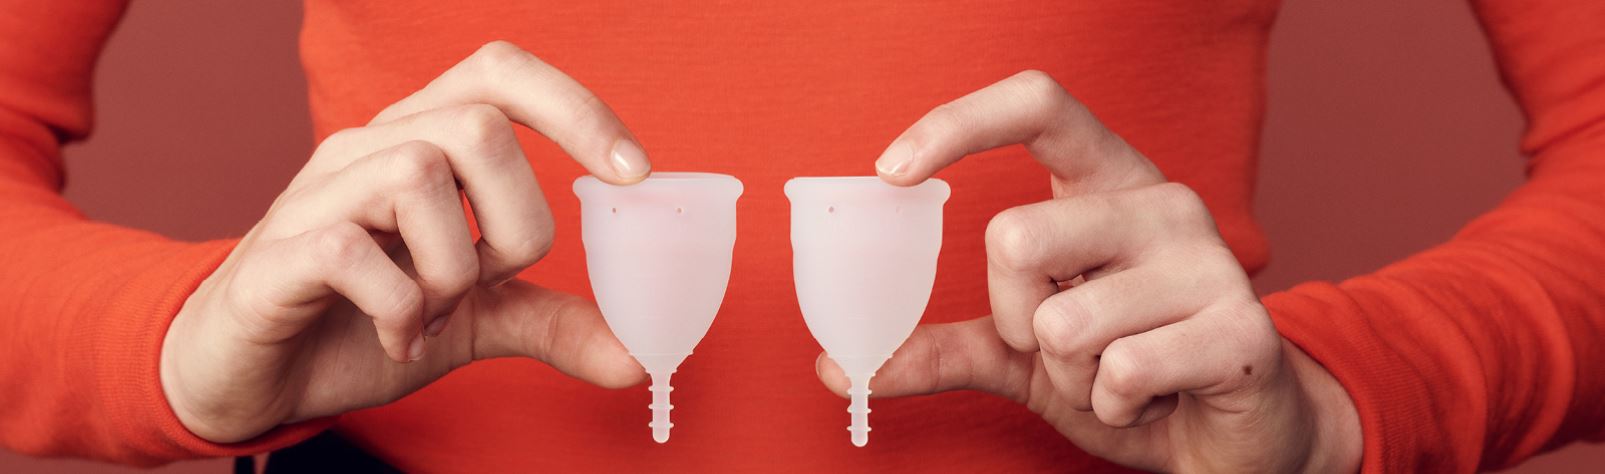 Cupa Menstruala Organicup Comparatie marimi